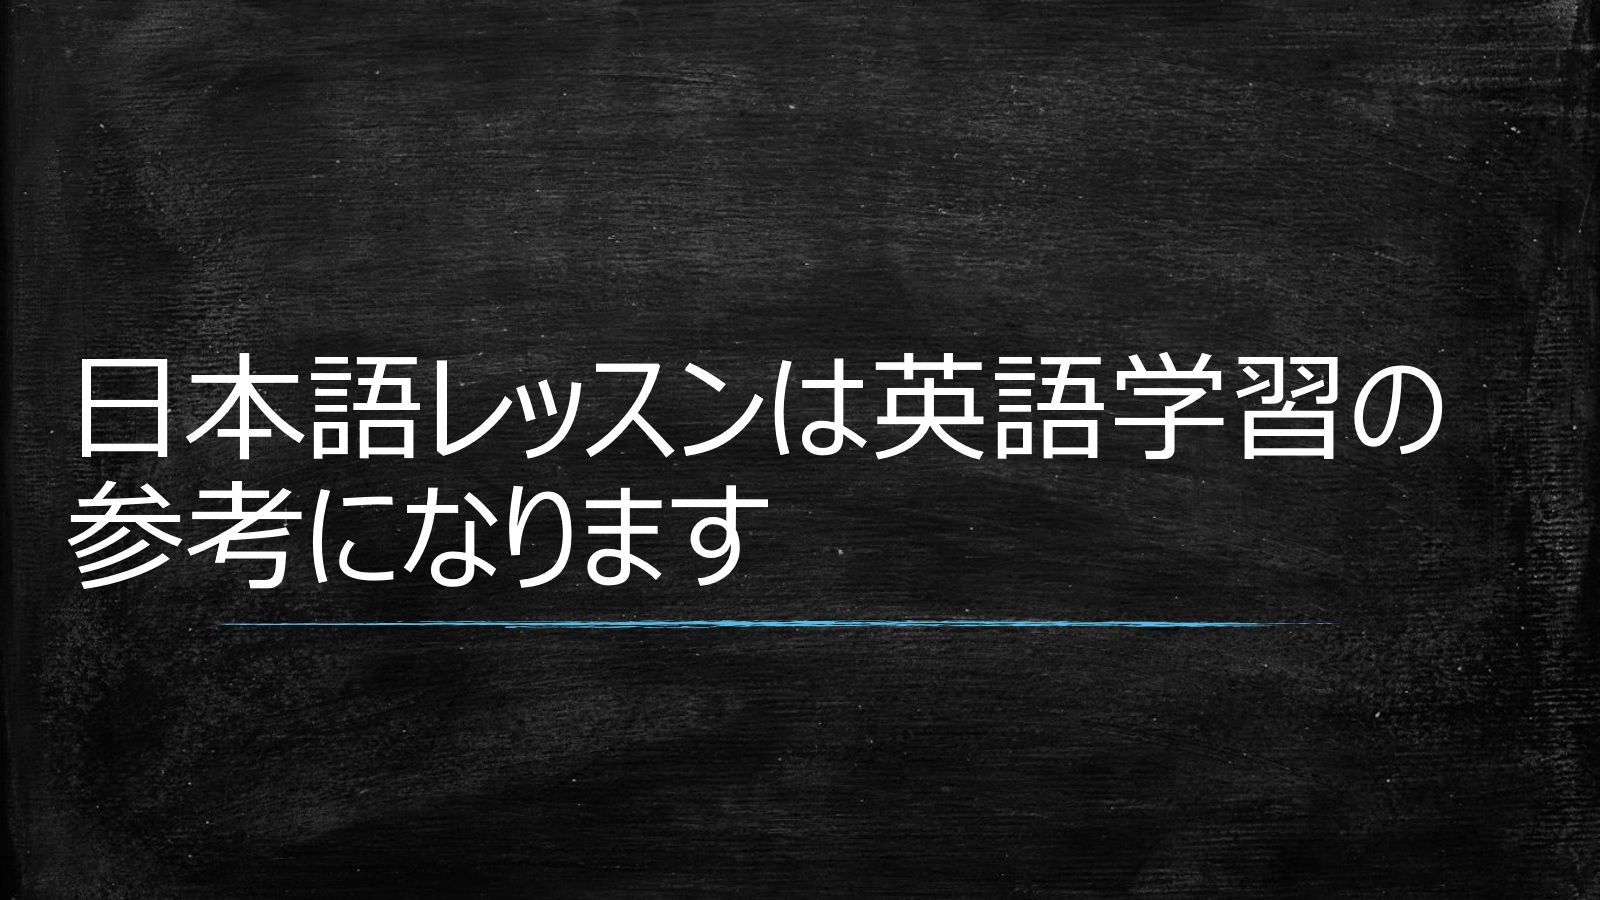 日本人の英語の学習には外国人の日本語レッスンが参考になります 日本語教師がすすめる1日30分の英語学習法